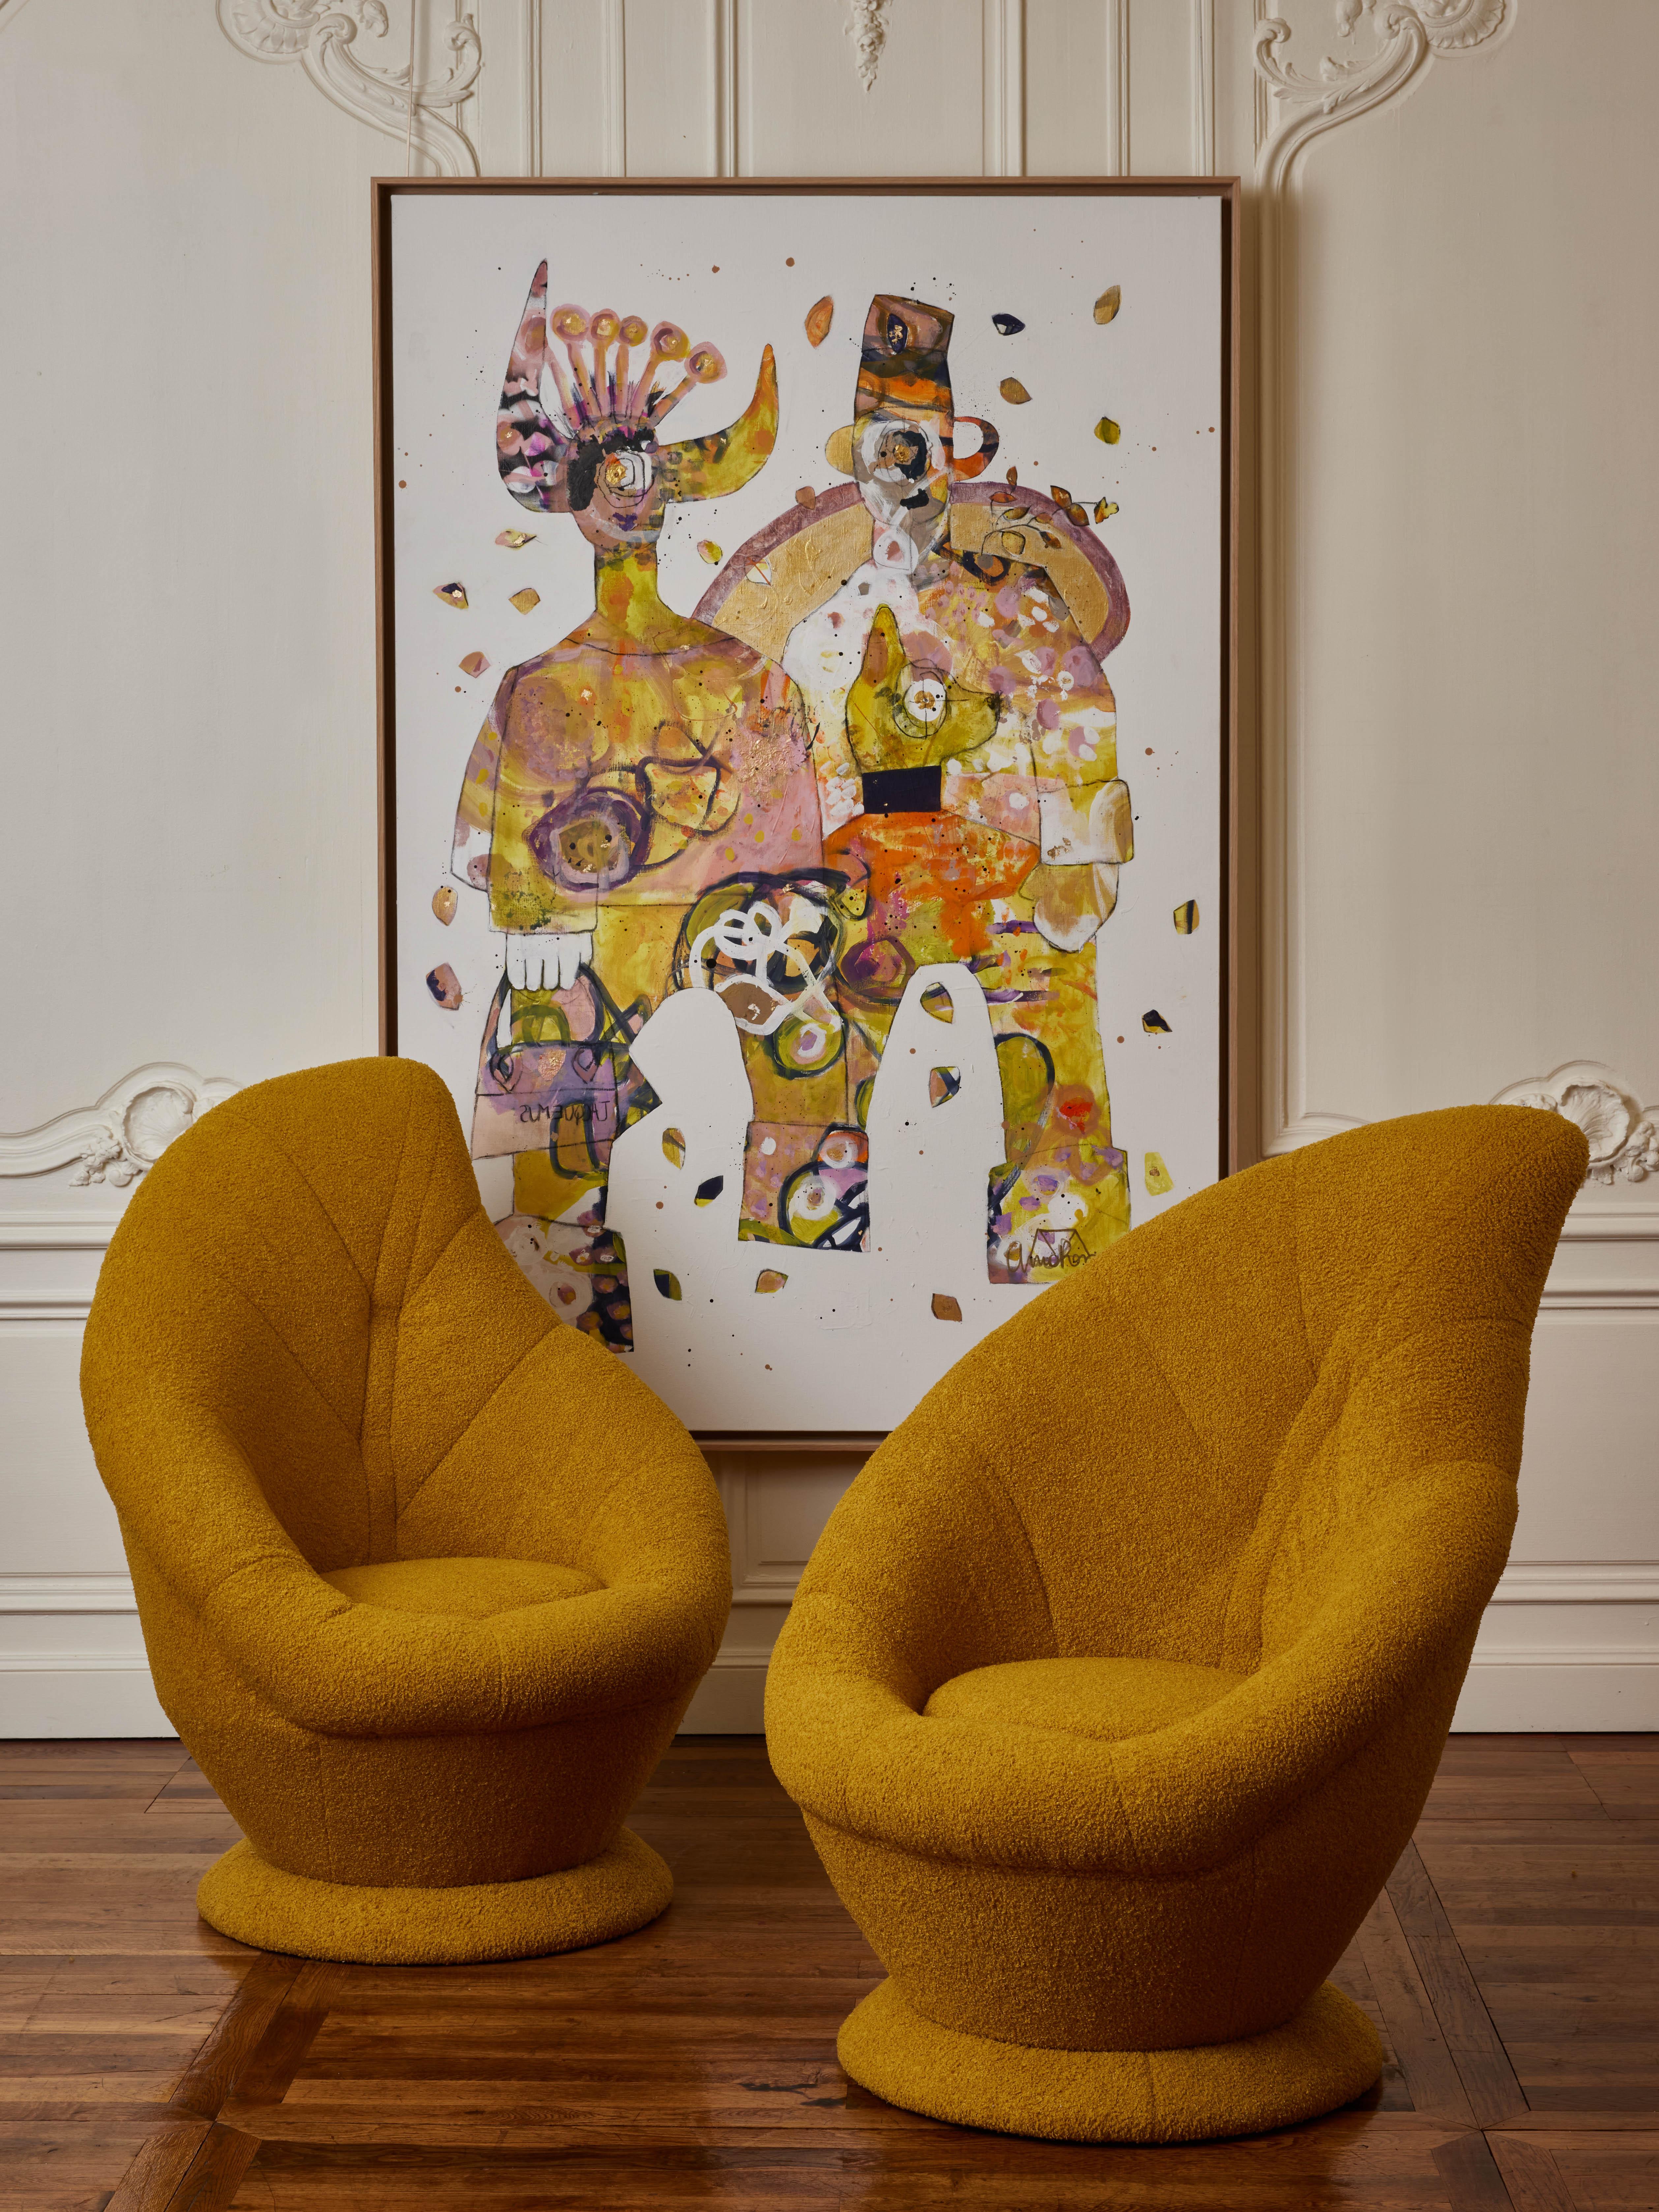 Paire de fauteuils à haut dossier, entièrement tapissés d'un tissu bouclette moutarde.
Création par le Studio Glustin.